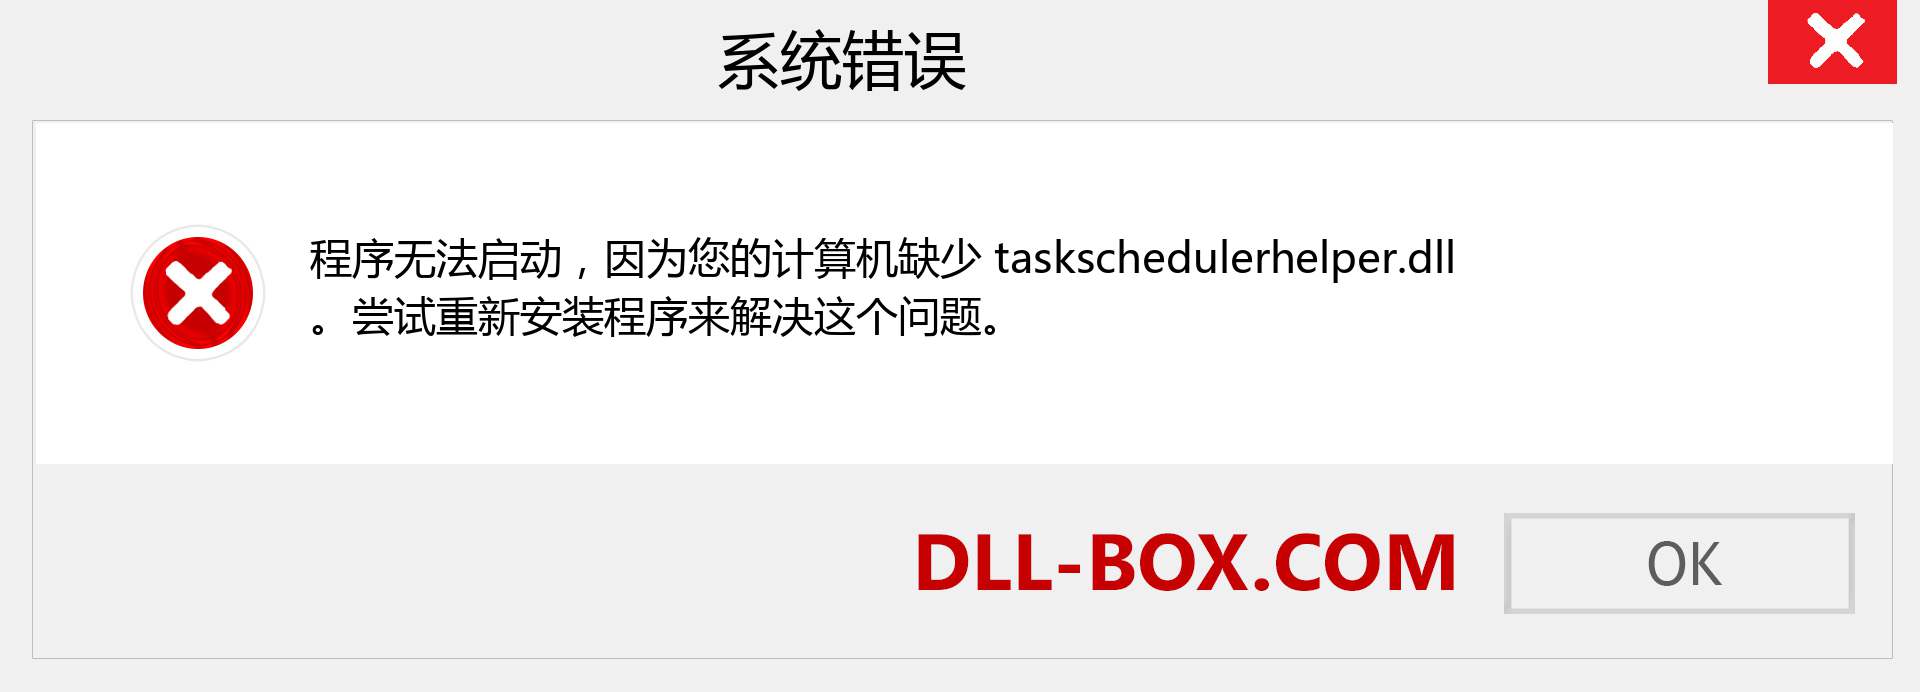 taskschedulerhelper.dll 文件丢失？。 适用于 Windows 7、8、10 的下载 - 修复 Windows、照片、图像上的 taskschedulerhelper dll 丢失错误